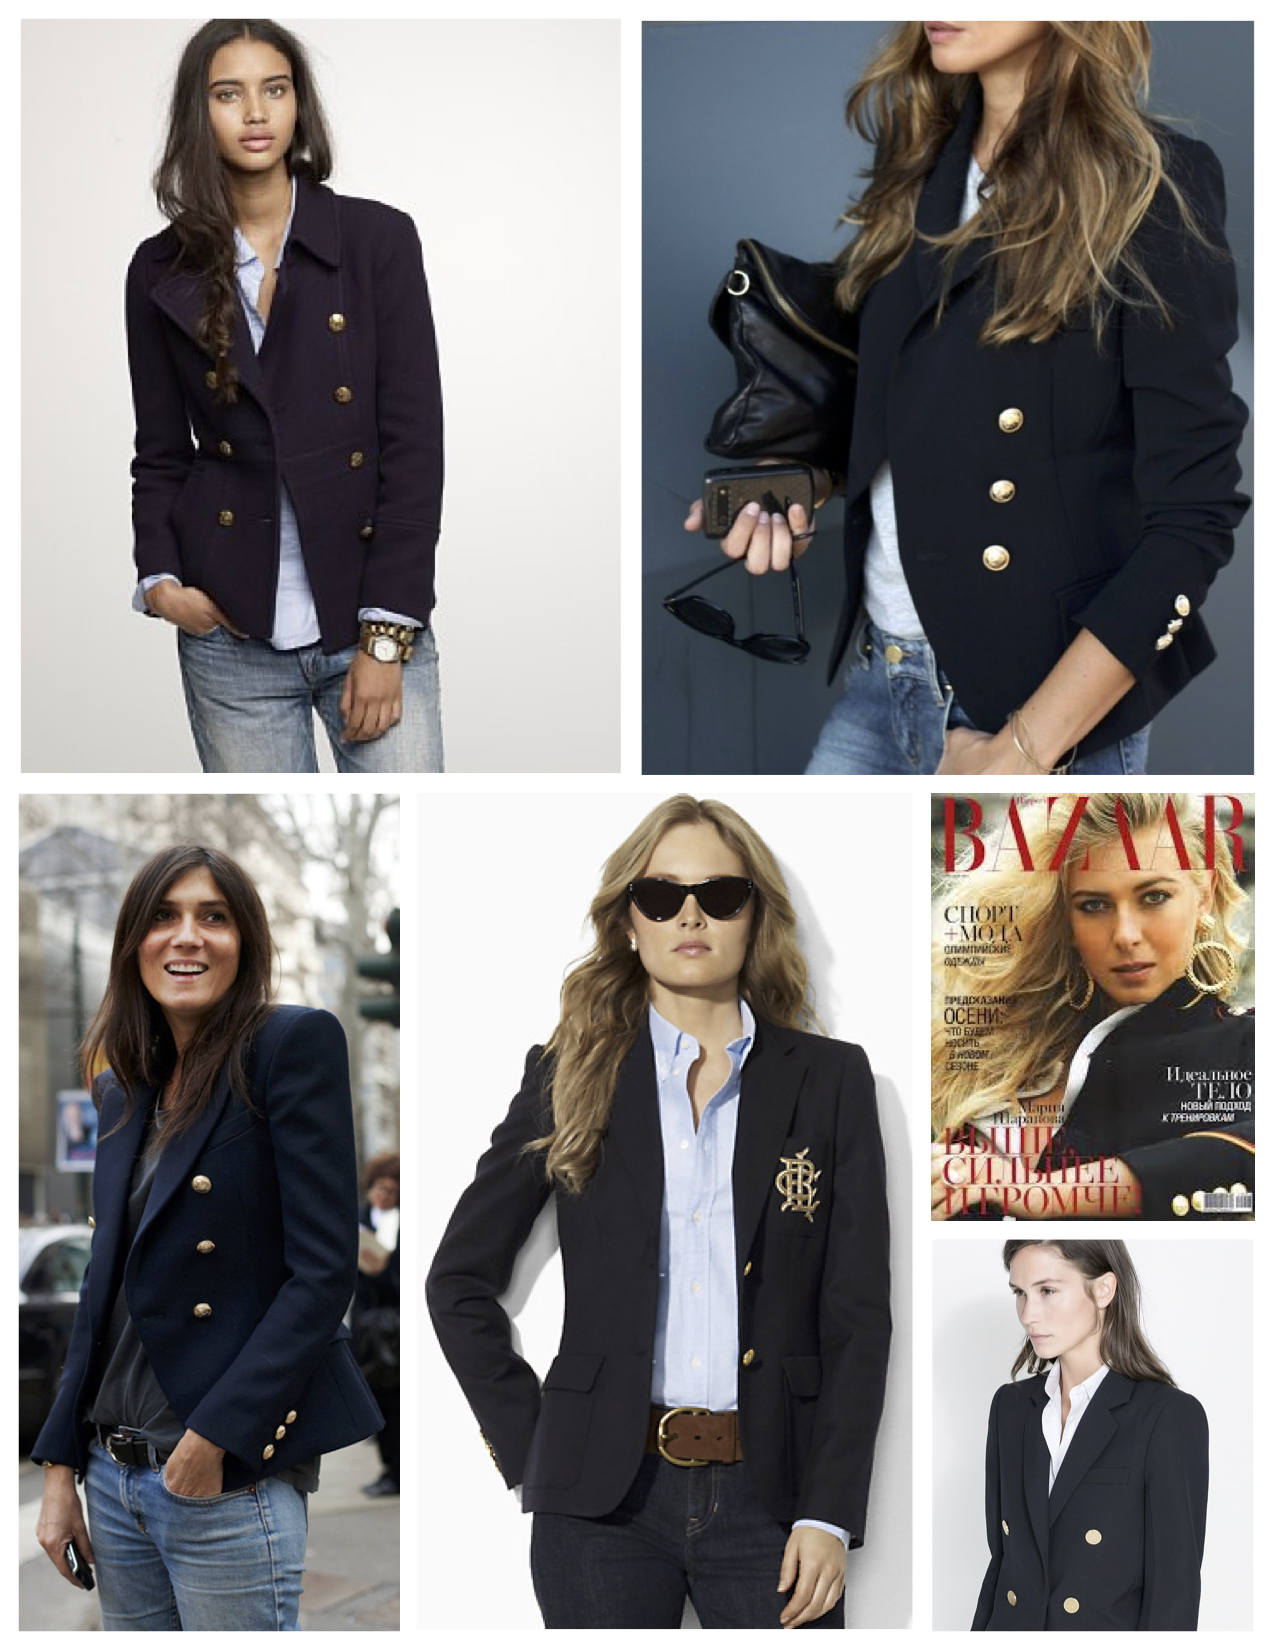 ralph lauren navy blue blazer with gold buttons